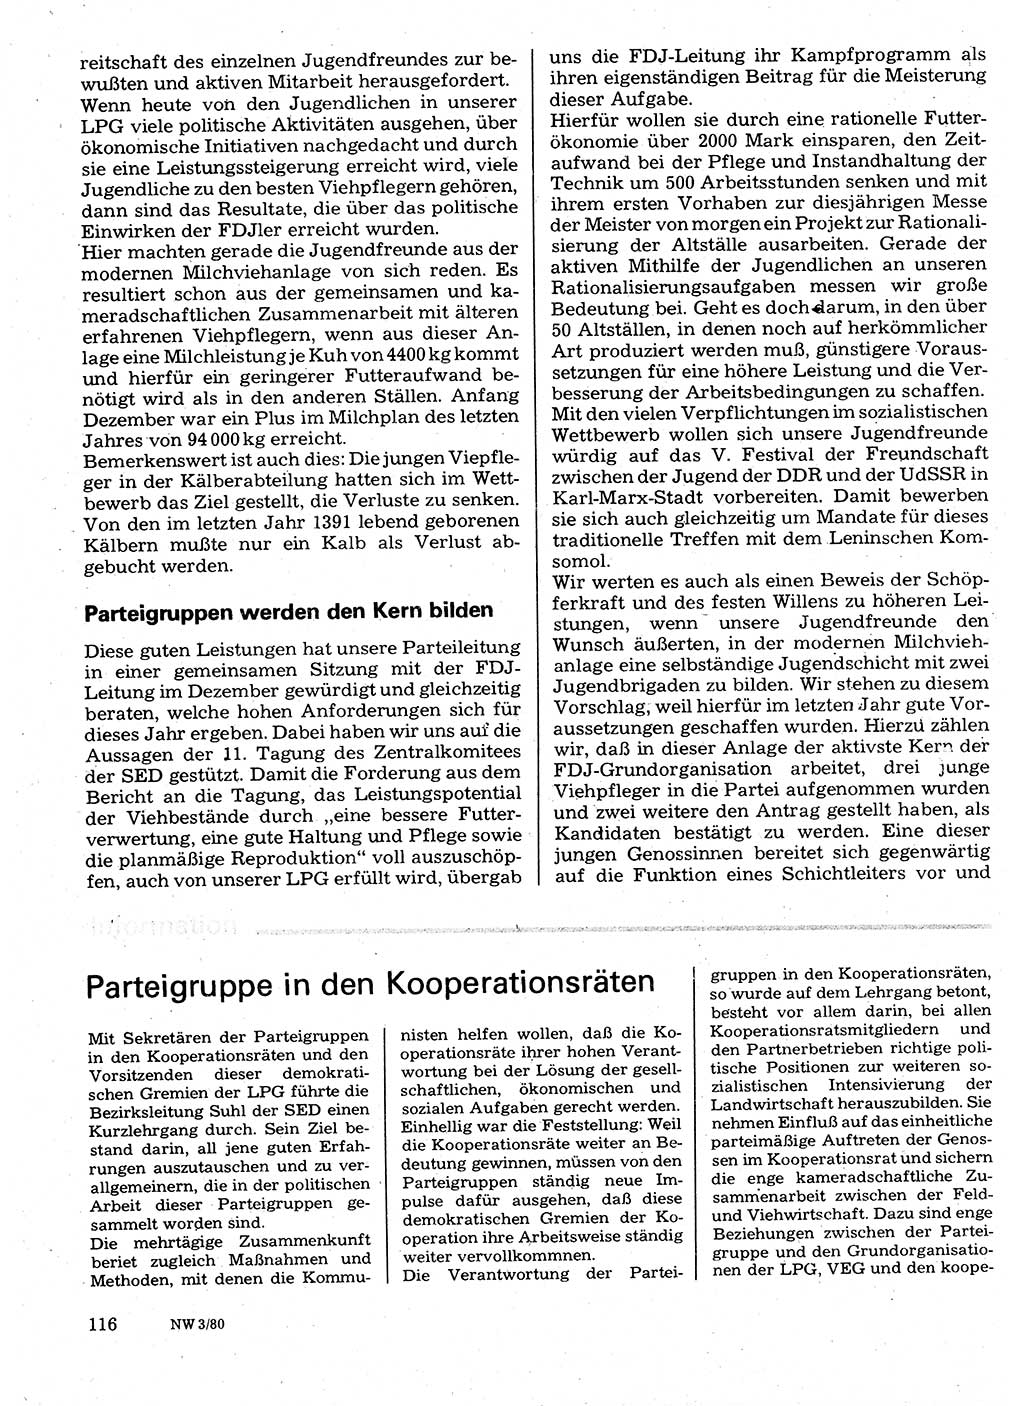 Neuer Weg (NW), Organ des Zentralkomitees (ZK) der SED (Sozialistische Einheitspartei Deutschlands) für Fragen des Parteilebens, 35. Jahrgang [Deutsche Demokratische Republik (DDR)] 1980, Seite 116 (NW ZK SED DDR 1980, S. 116)